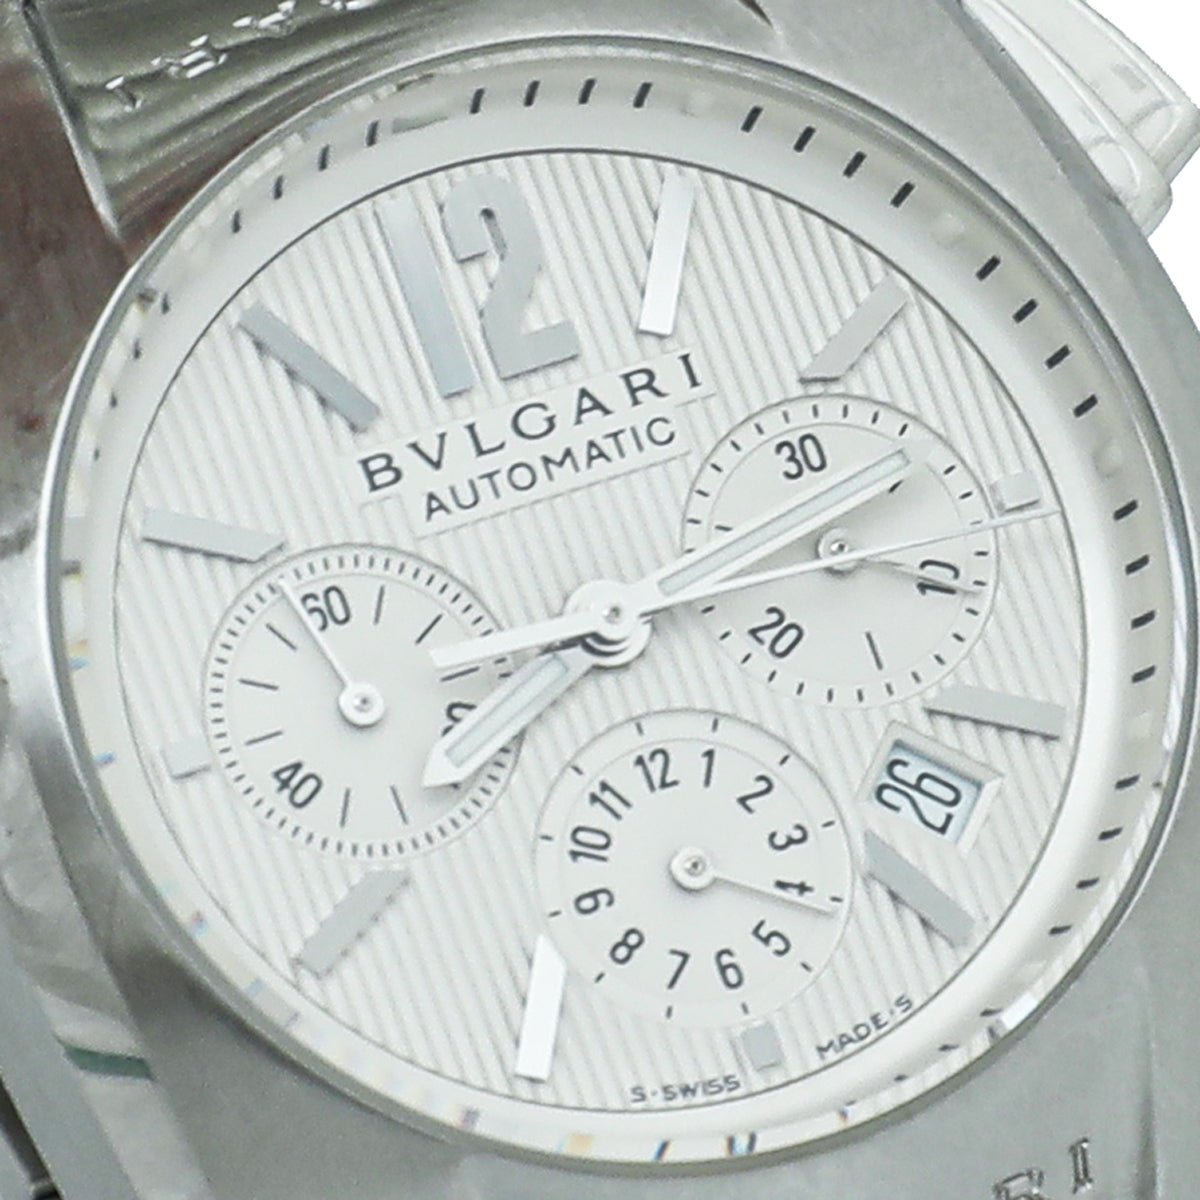 Bvlgari - Bvlgari Stainless Steel Chronograph Ergon Automatic 35mm Watch | The Closet